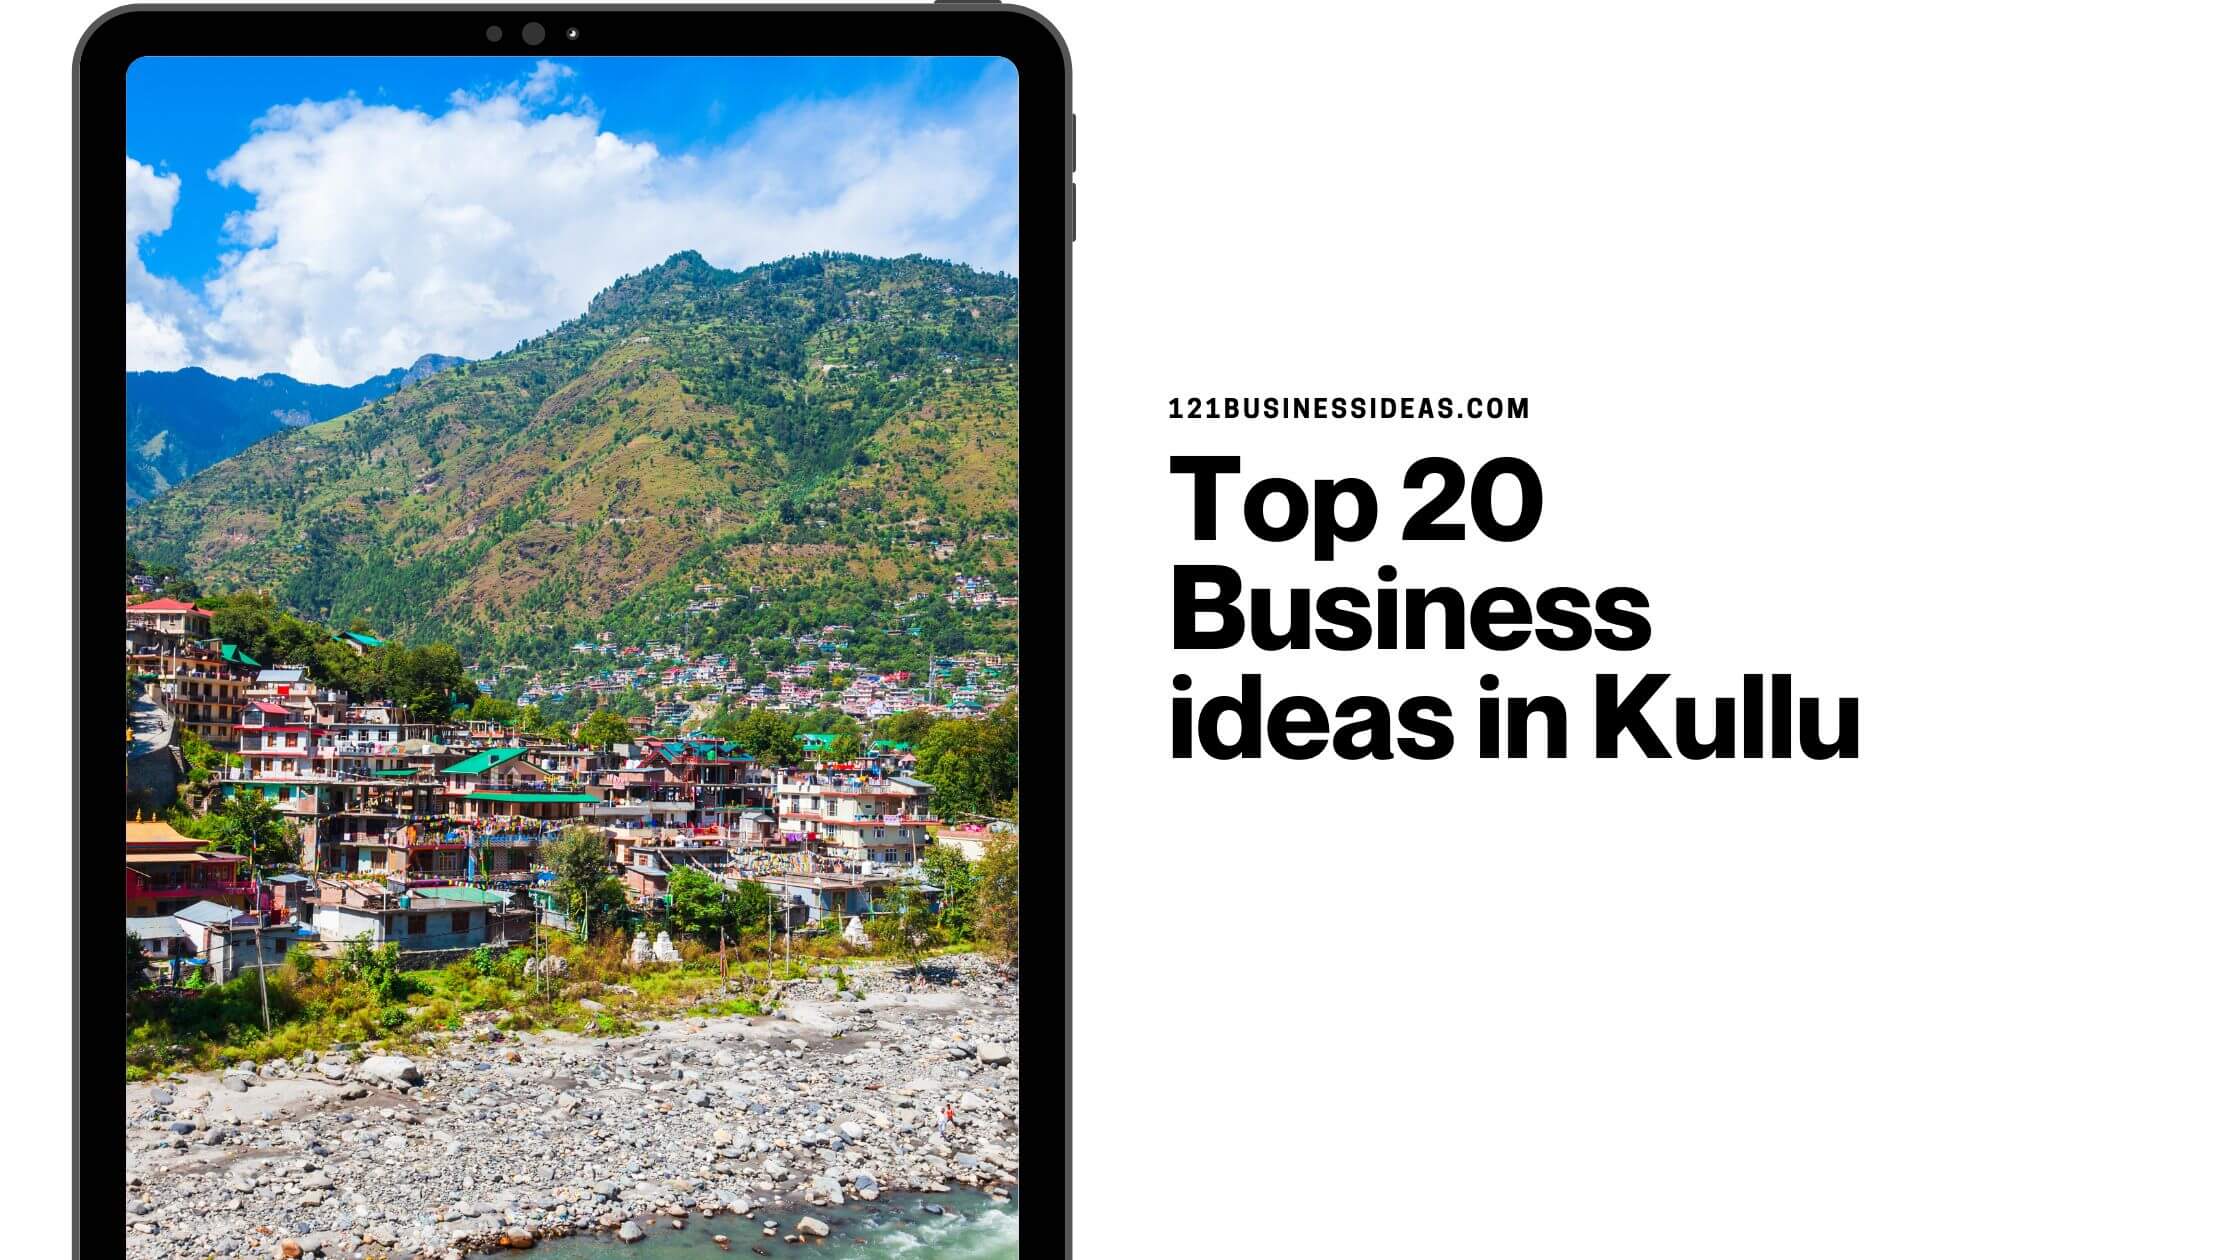 Top 20 Business ideas in Kullu (1)